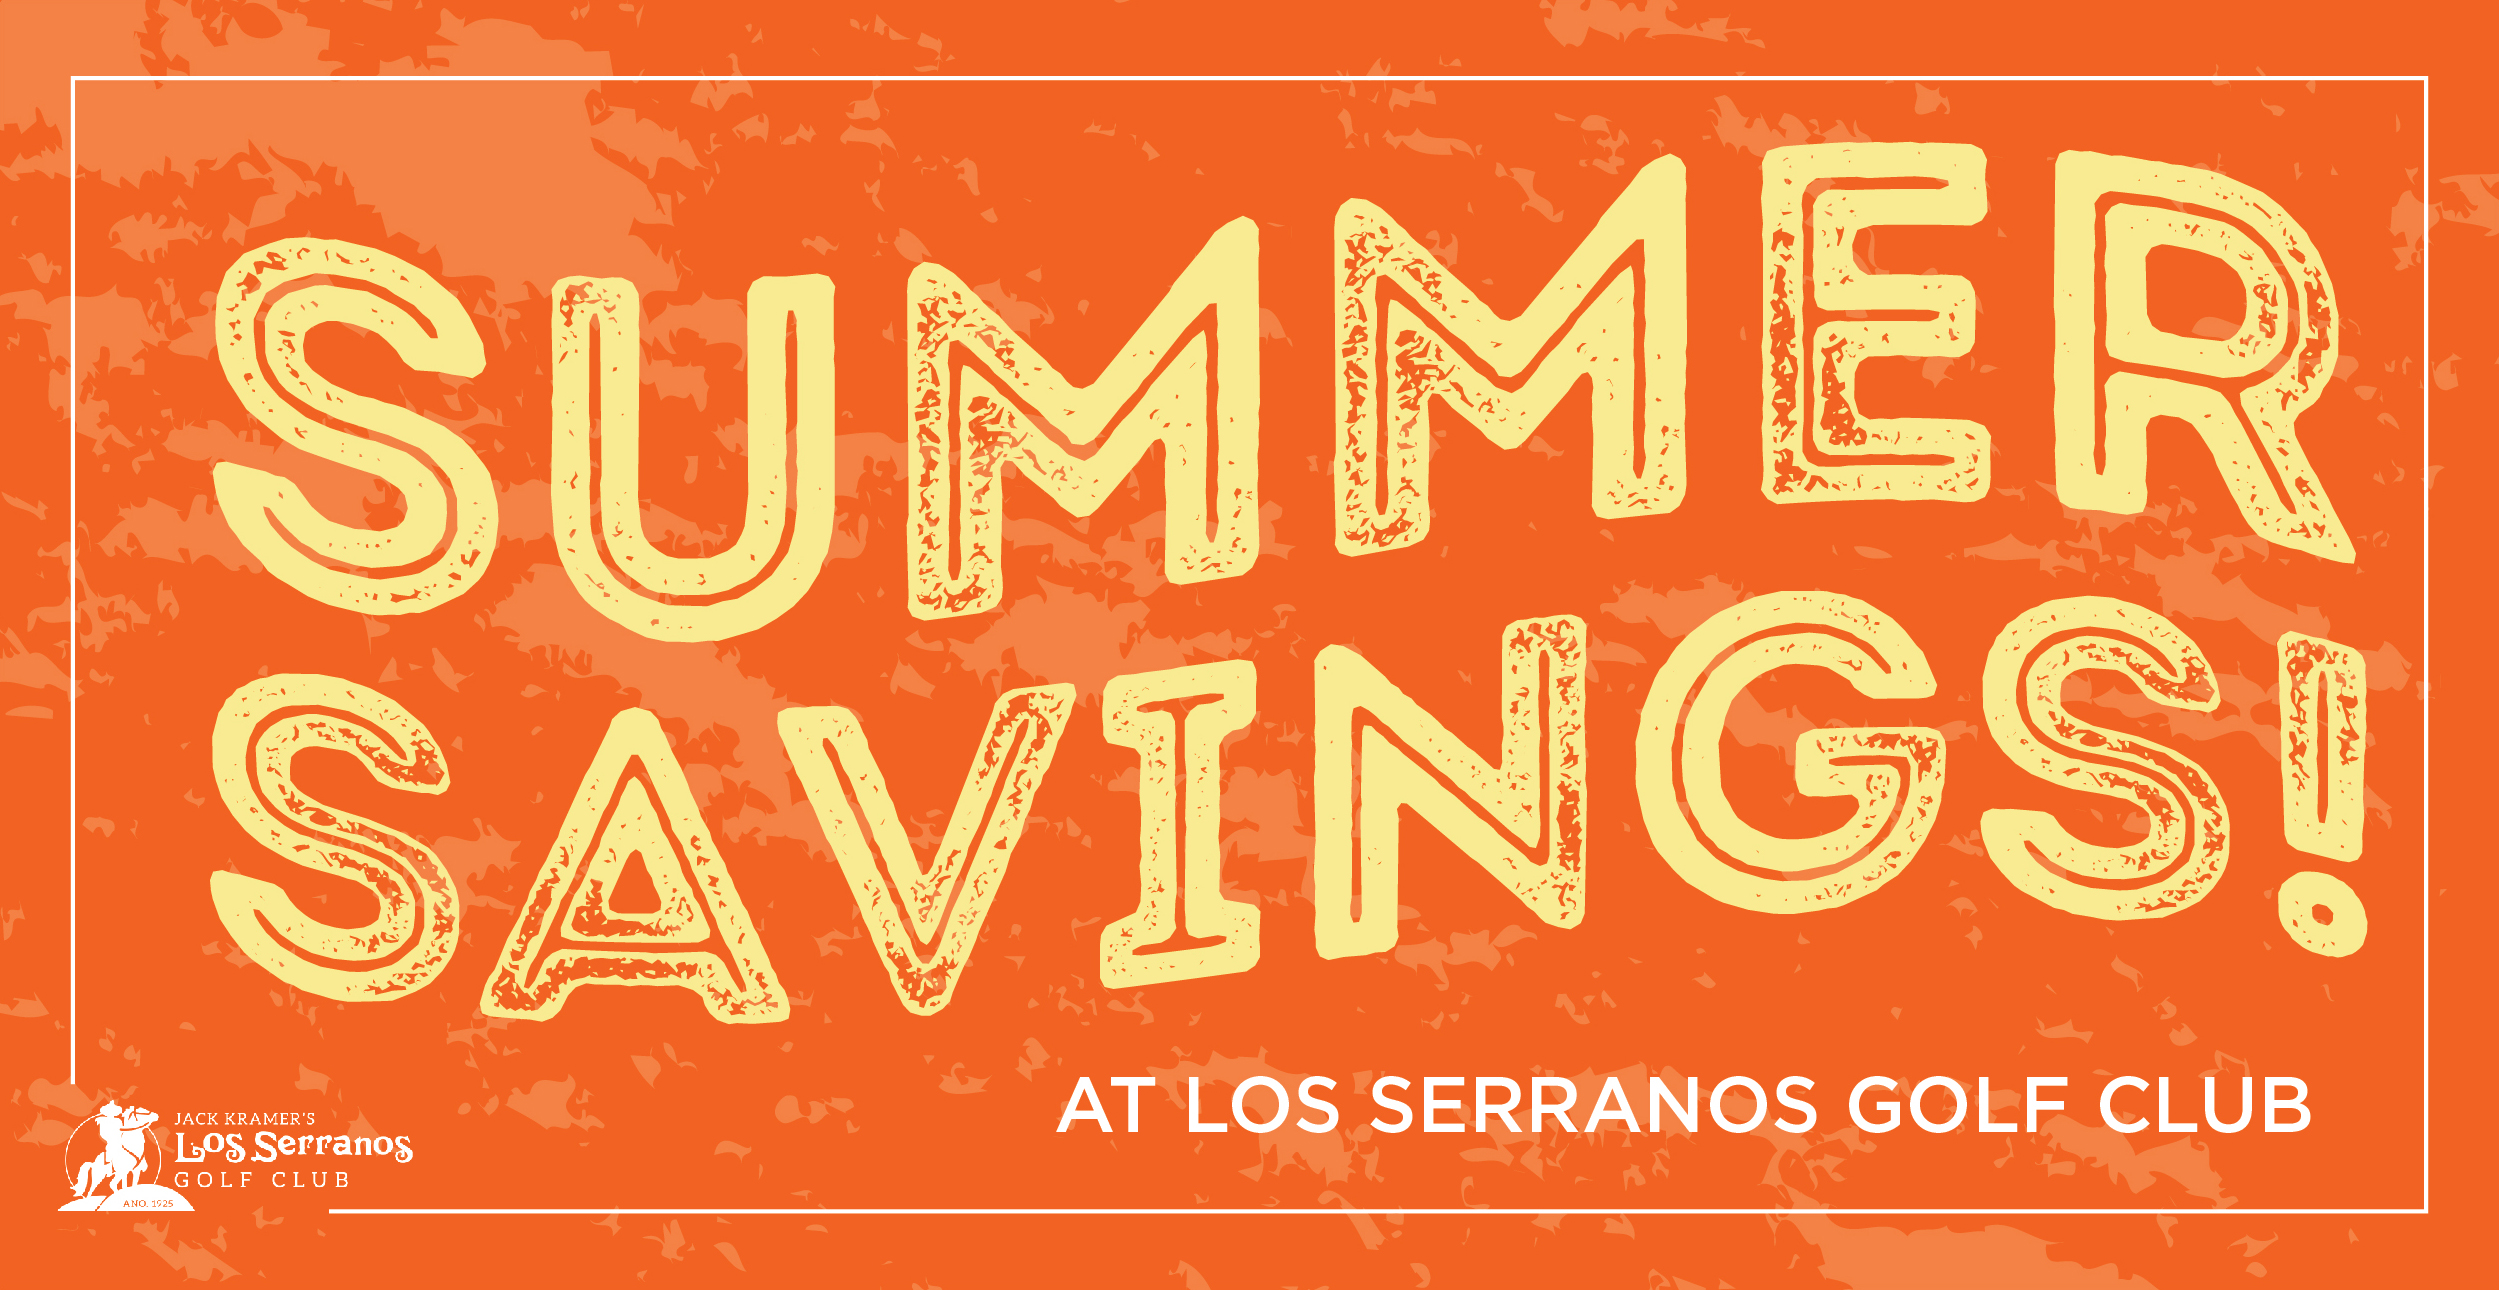 Summer golf savings and low rates at Los Serranos Golf Club